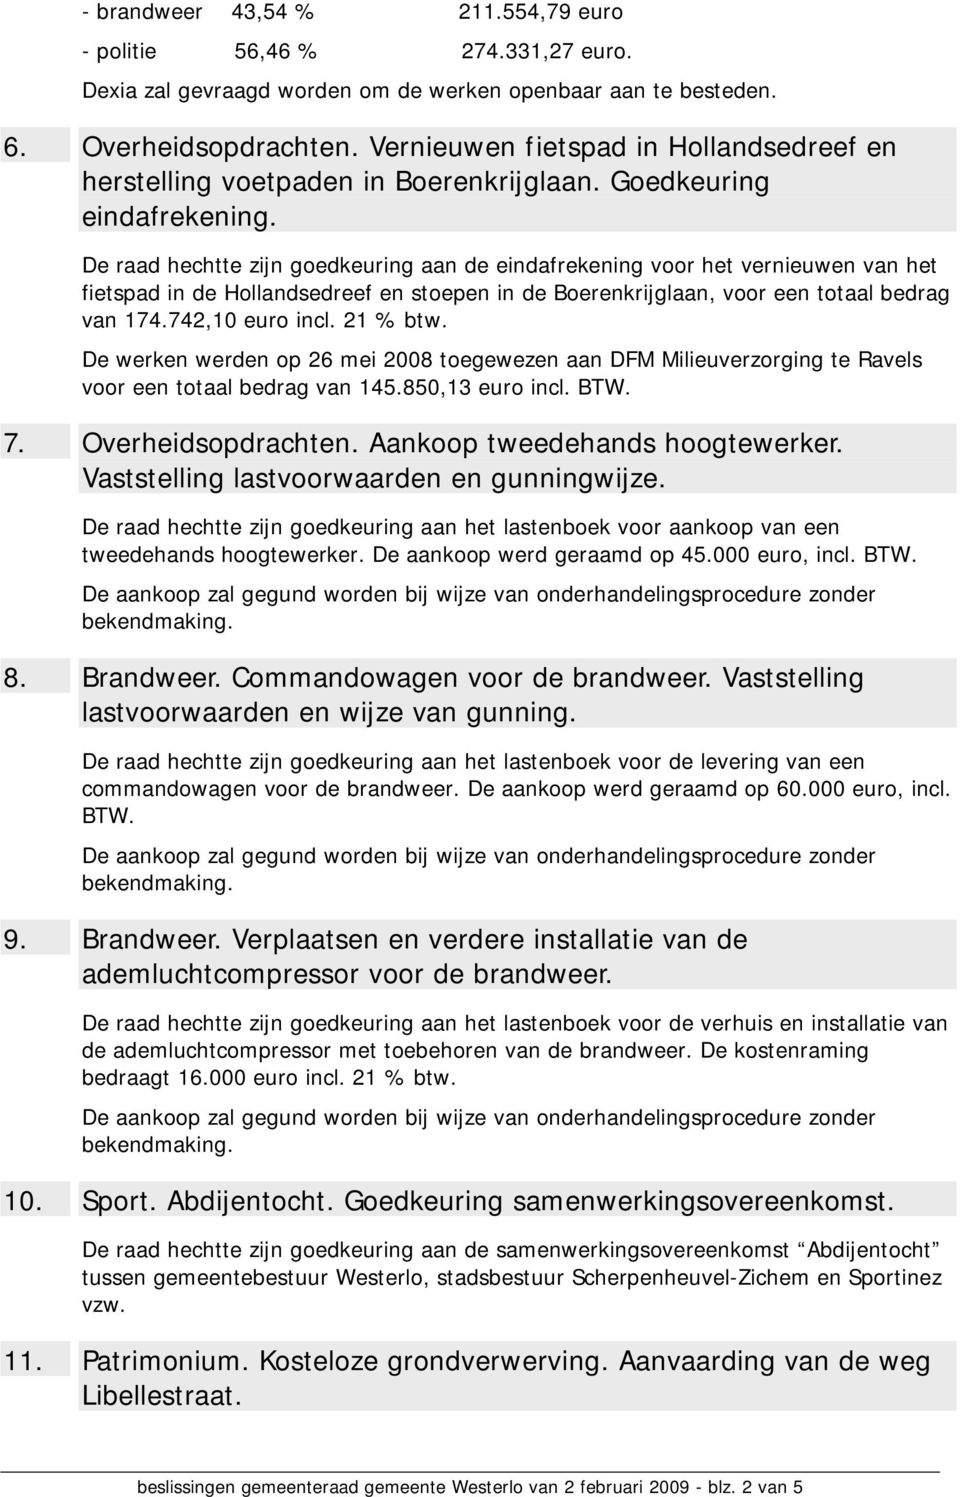 De raad hechtte zijn goedkeuring aan de eindafrekening voor het vernieuwen van het fietspad in de Hollandsedreef en stoepen in de Boerenkrijglaan, voor een totaal bedrag van 174.742,10 euro incl.